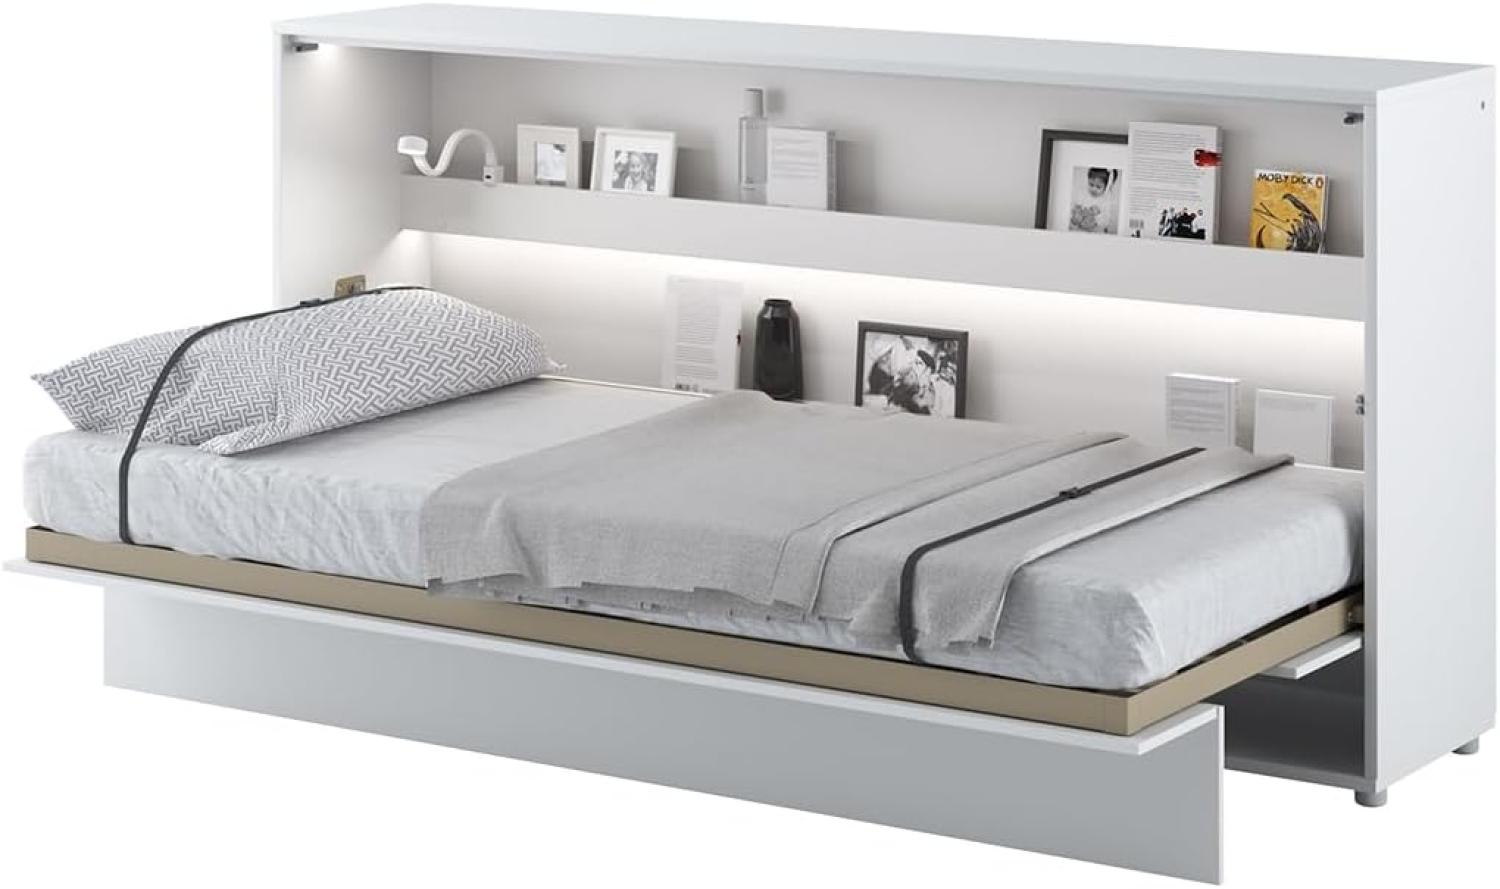 MEBLINI Schrankbett Bed Concept - Wandbett mit Lattenrost - Klappbett mit Schrank - Wandklappbett - Murphy Bed - Bettschrank - BC-06 - 90x200cm Horizontal - Weiß Hochglanz/Weiß Bild 1